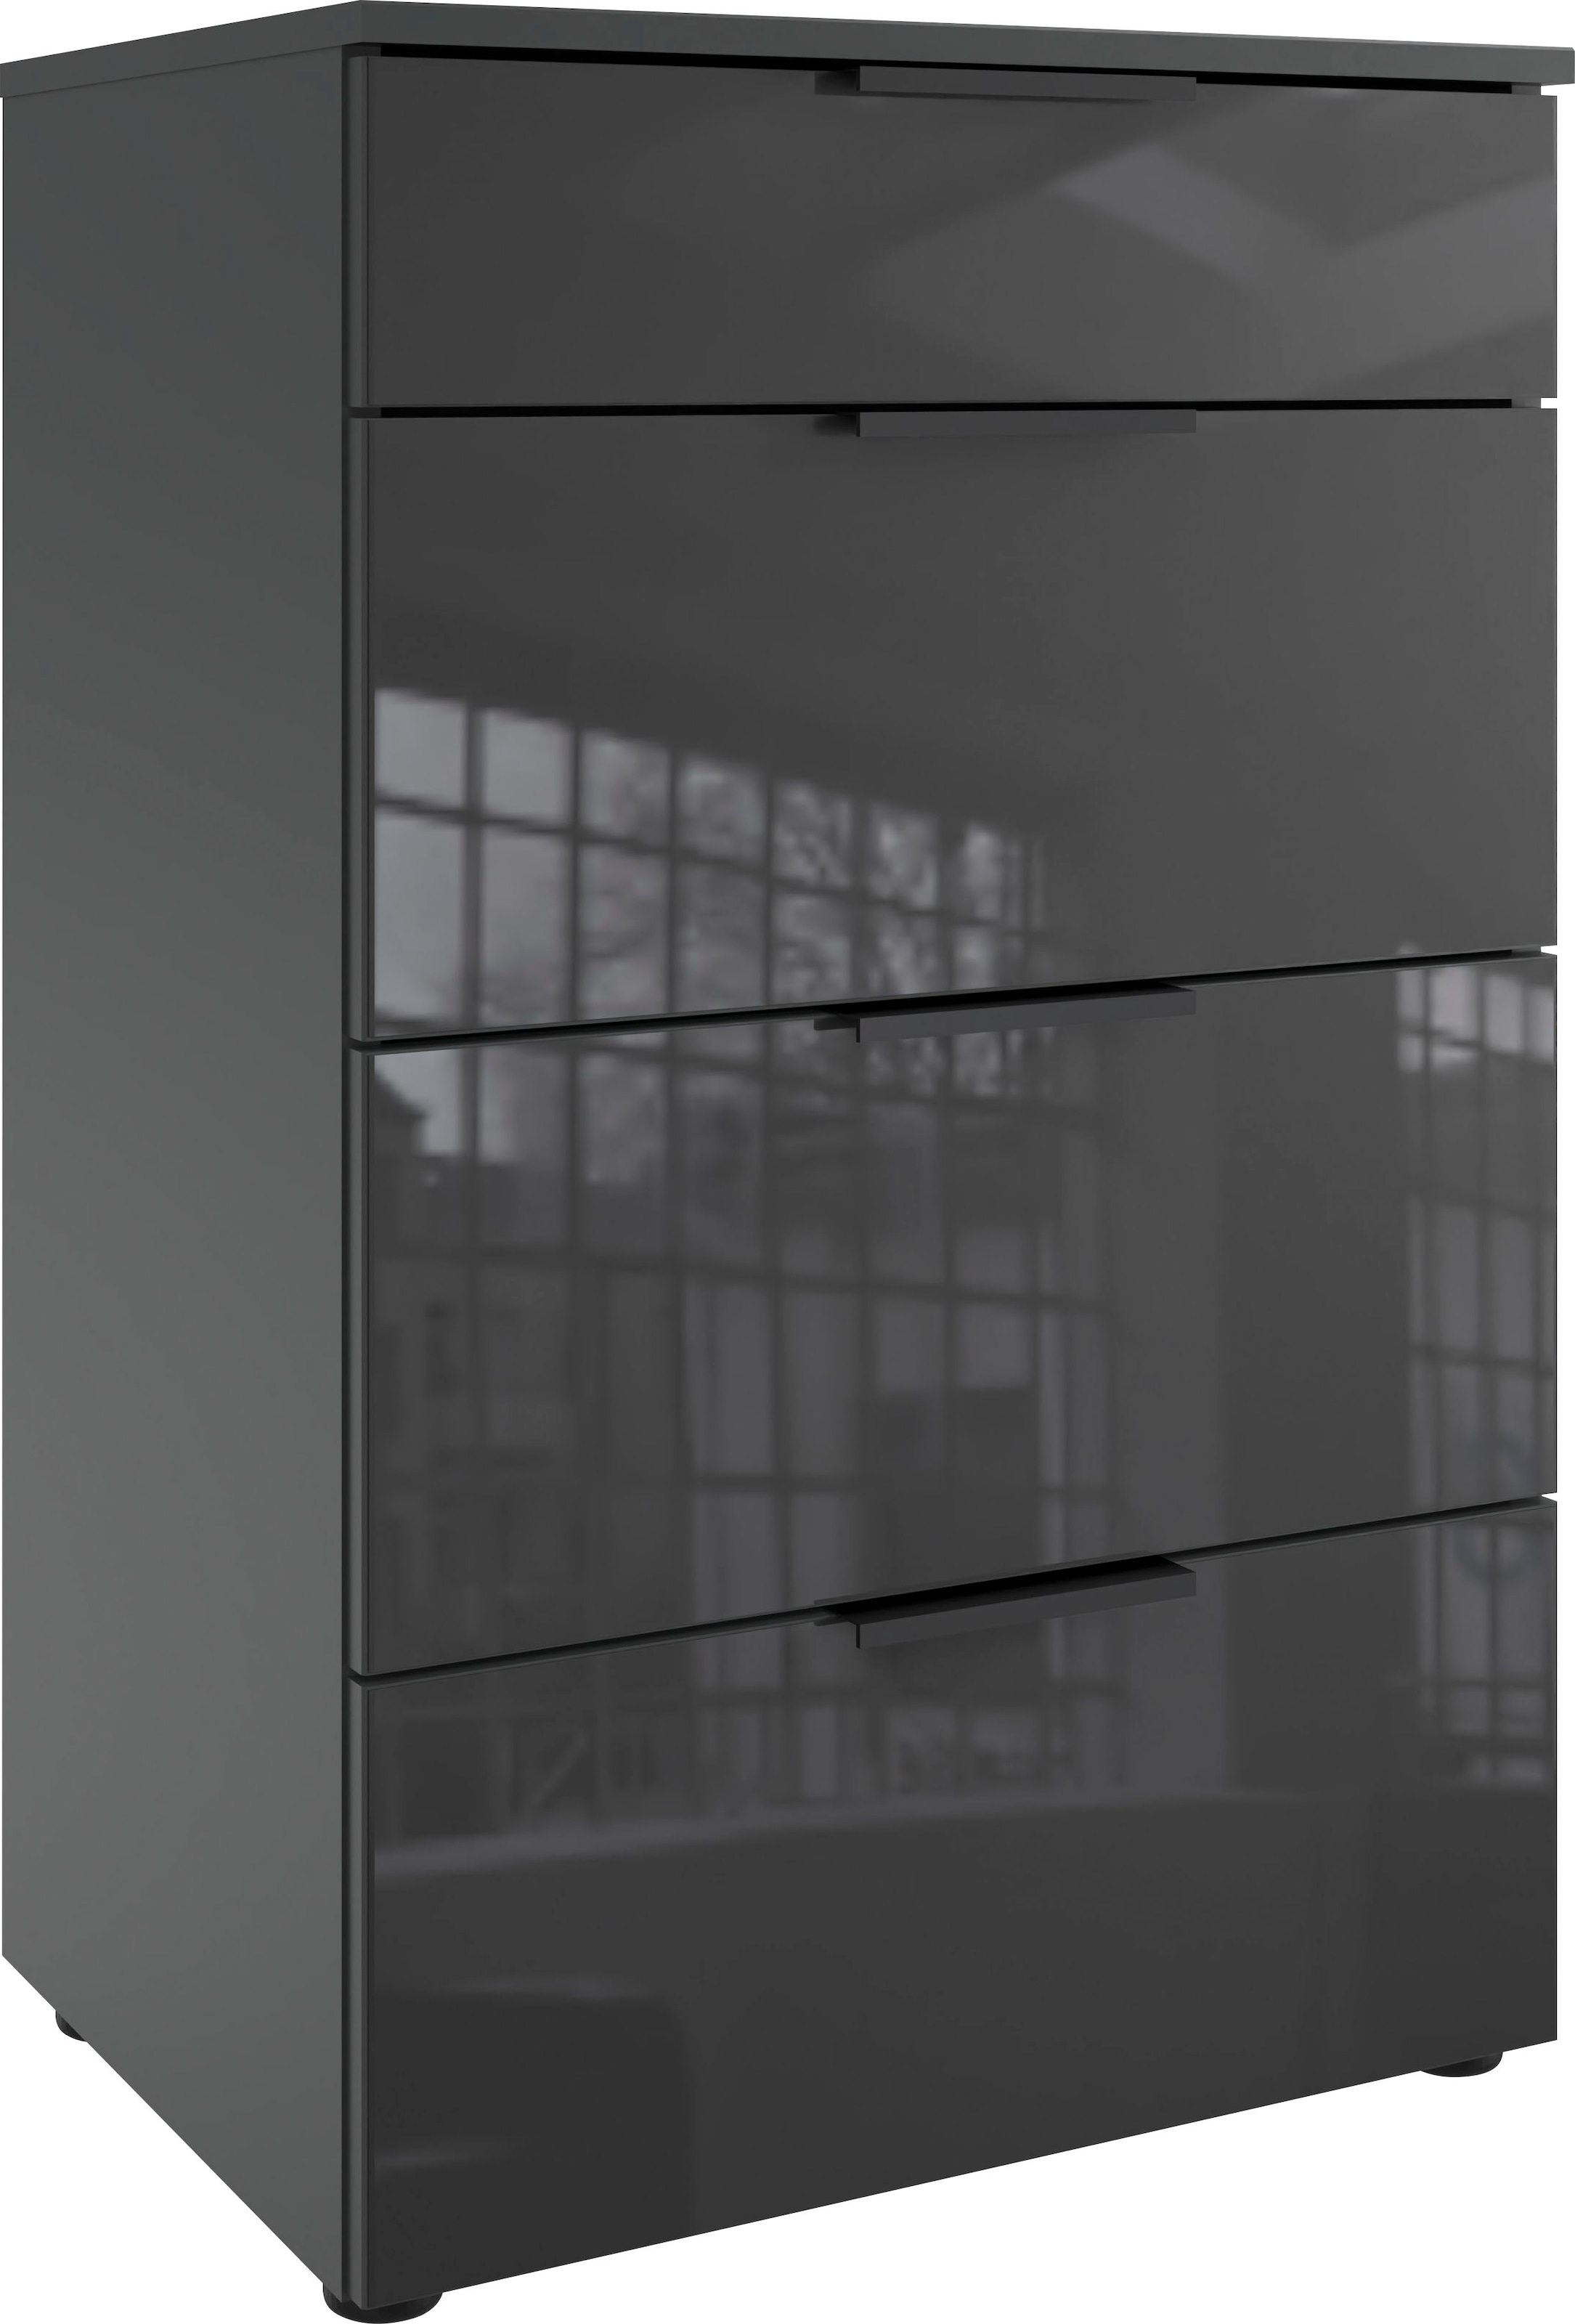 Wimex Schubkastenkommode »Level36 black C by fresh to go«, mit Glaselementen auf der Front, soft-close Funktion, 54cm breit